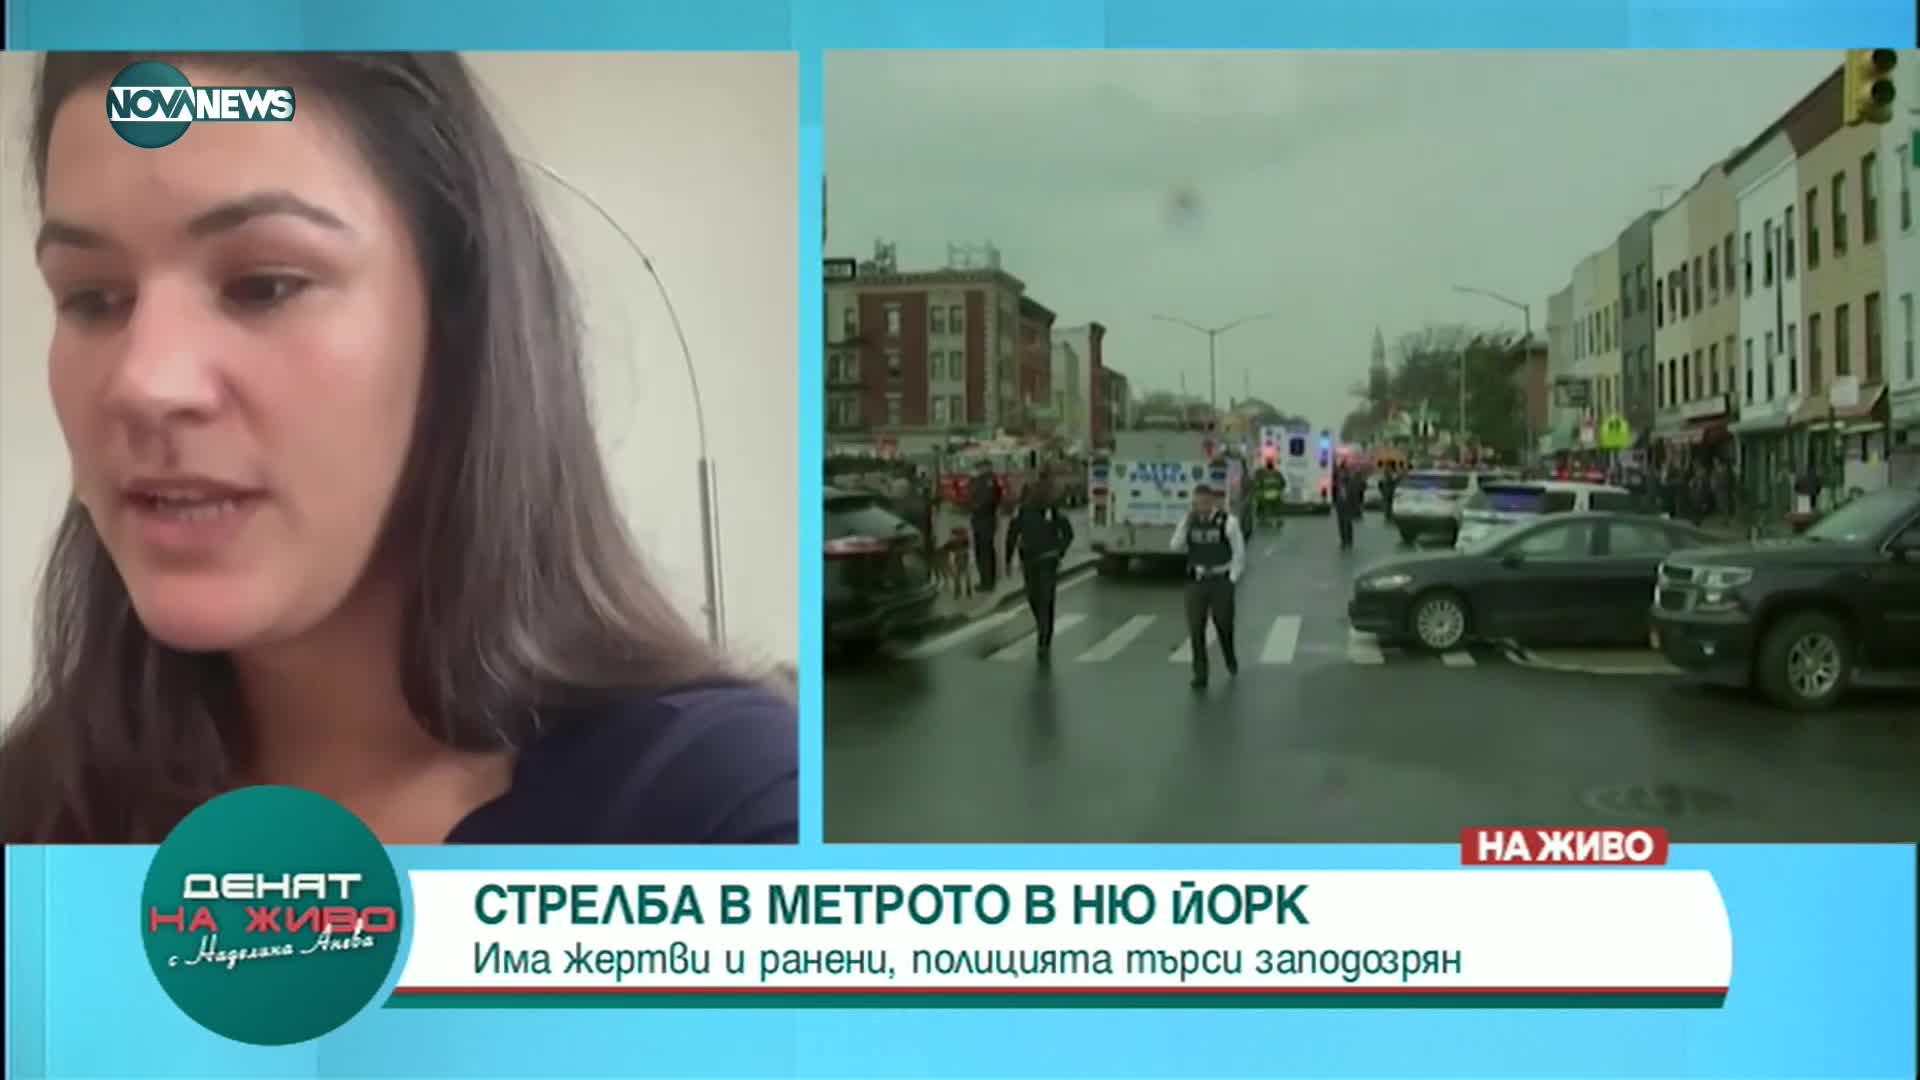 Българка от Бруклин: Има напрежение сред гражданите след стрелбата в Ню Йорк